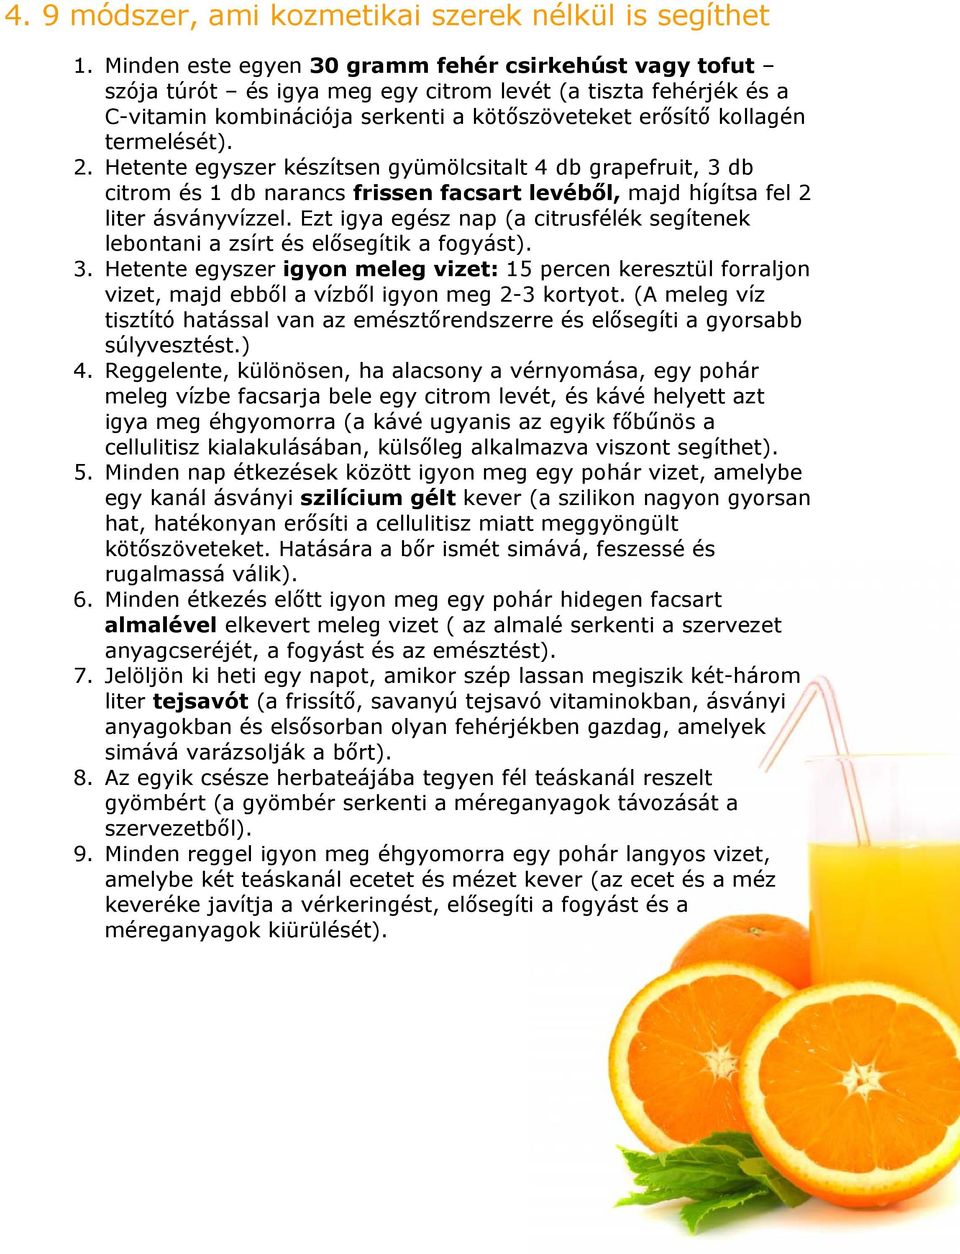 2. Hetente egyszer készítsen gyümölcsitalt 4 db grapefruit, 3 db citrom és 1 db narancs frissen facsart levéből, majd hígítsa fel 2 liter ásványvízzel.